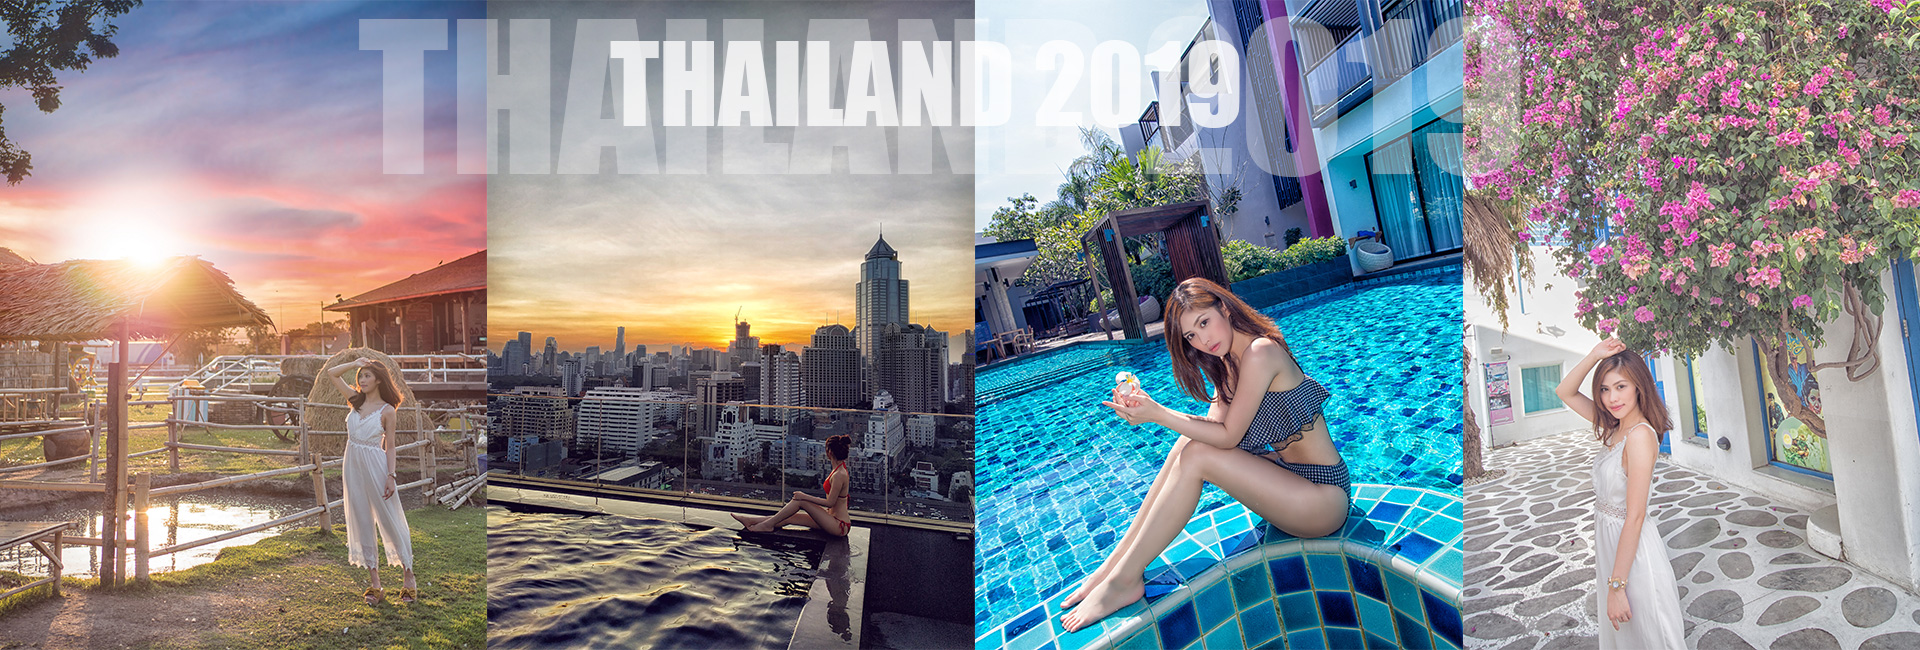 Thailand 2019